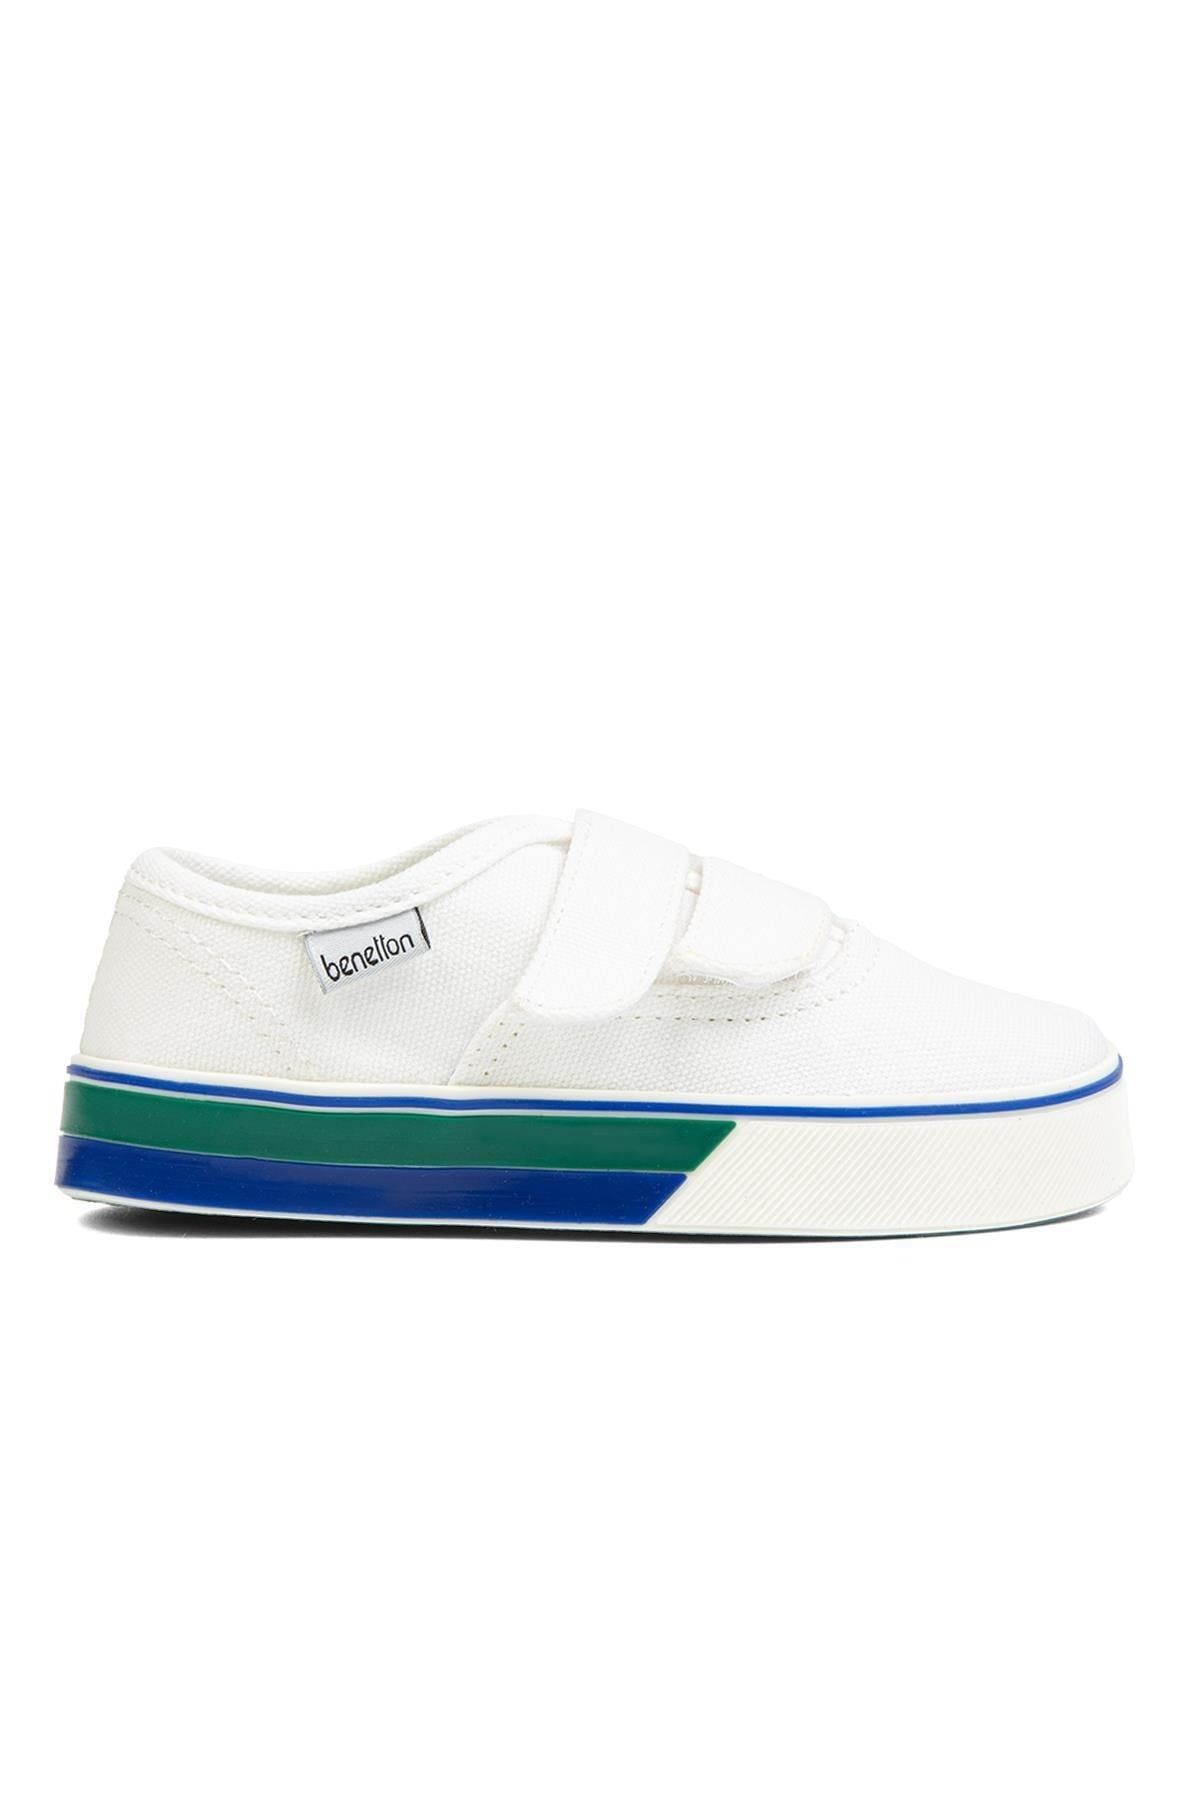 Benetton ® | BN-30960- Beyaz - Çocuk Spor Ayakkabı